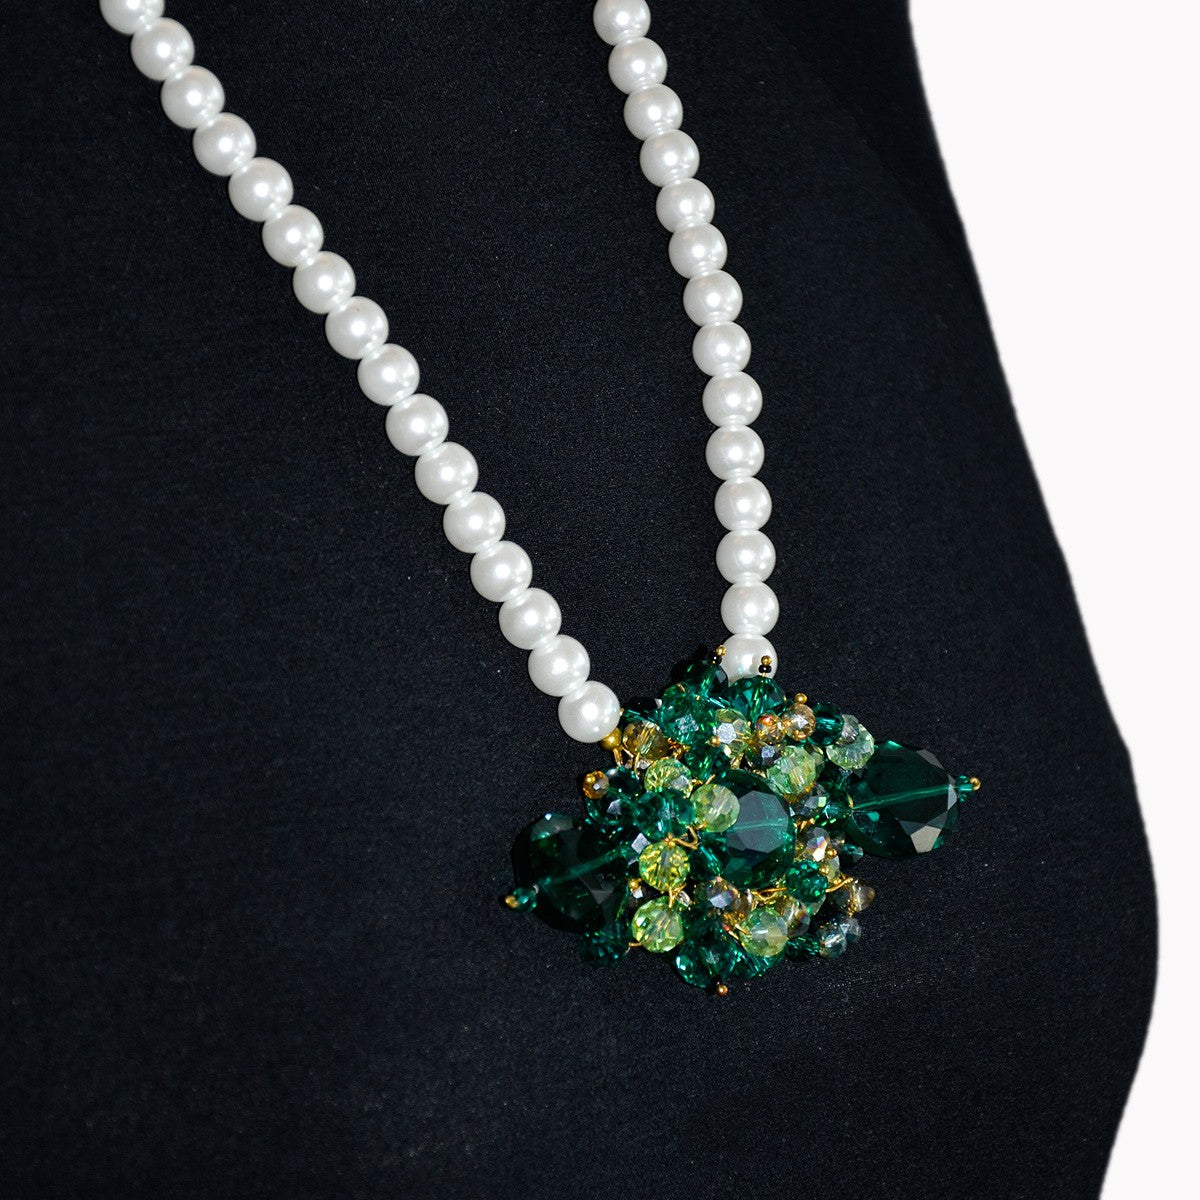 Collana LE PERLE .004.1, perle maiorca e cristalli verdi.